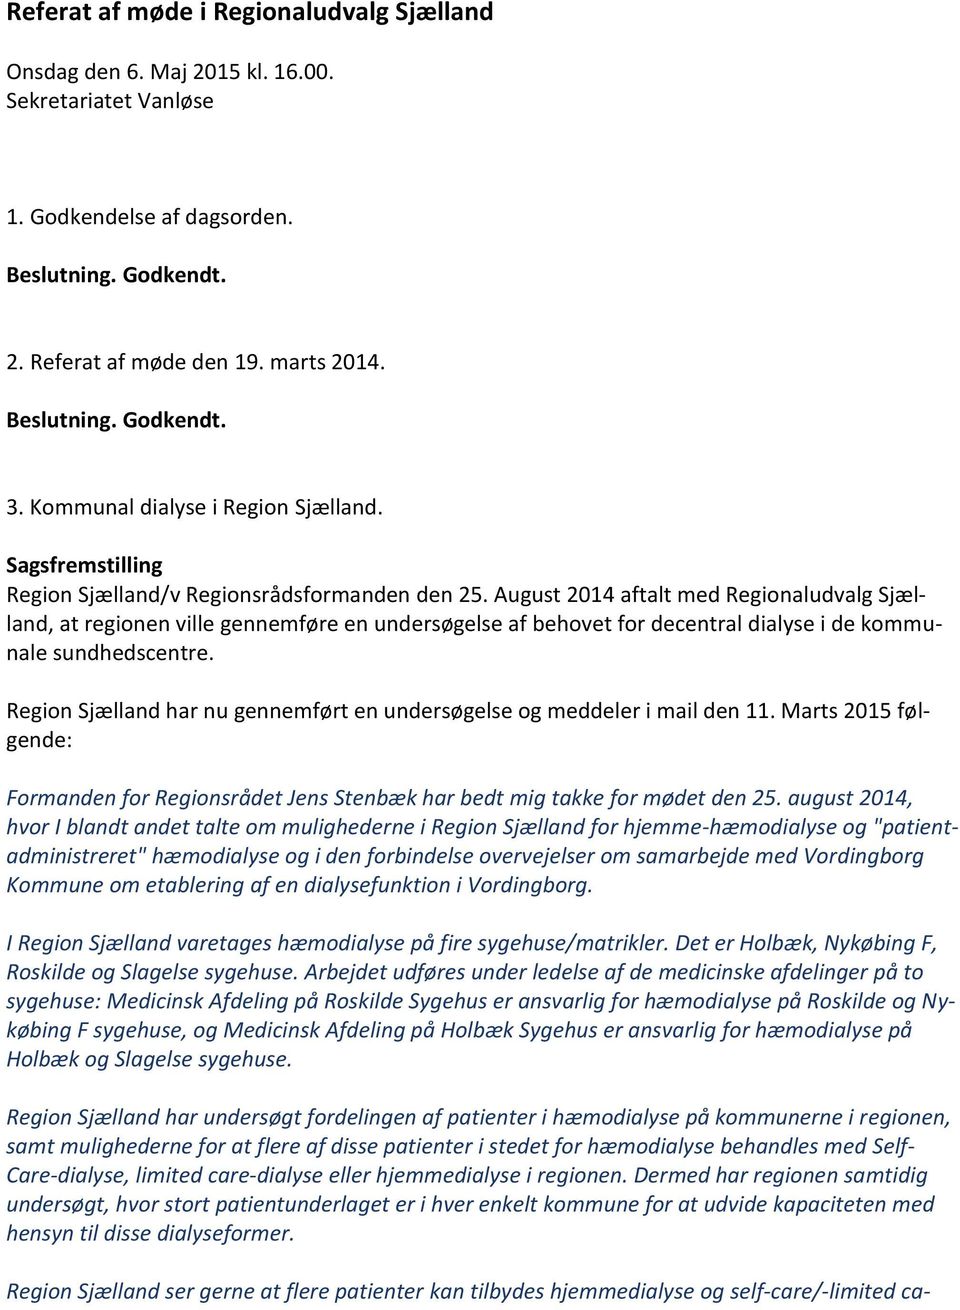 August 2014 aftalt med Regionaludvalg Sjælland, at regionen ville gennemføre en undersøgelse af behovet for decentral dialyse i de kommunale sundhedscentre.